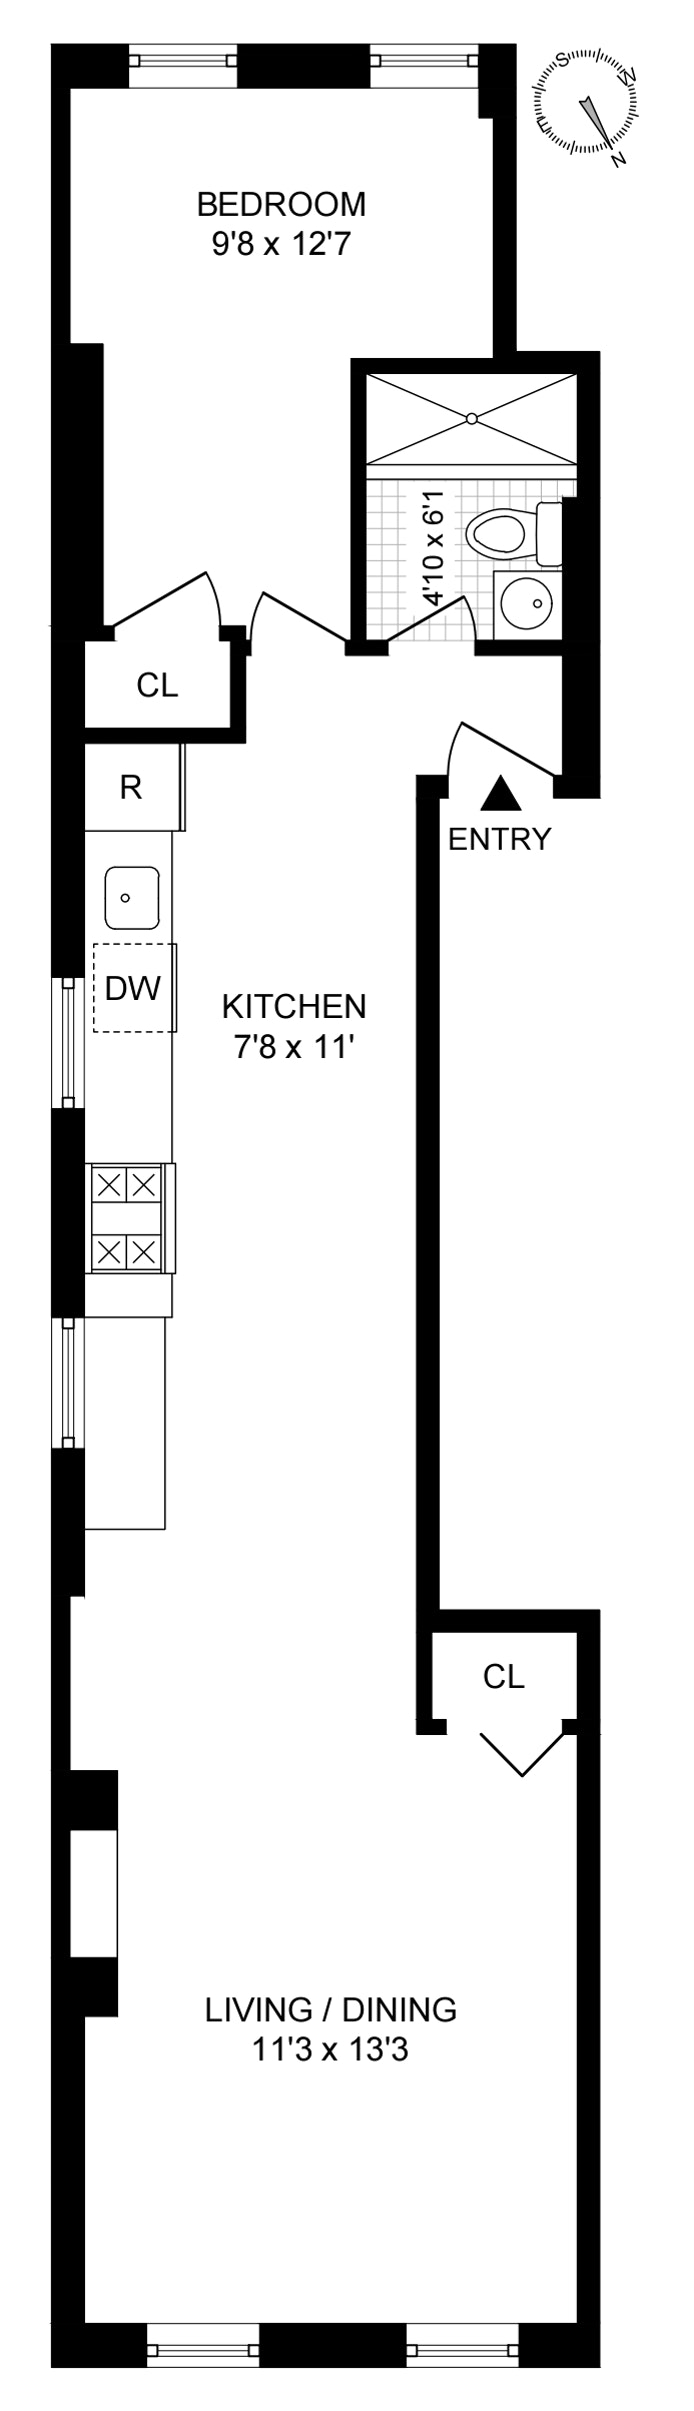 Floorplan for 334 East 5th Street, 2E